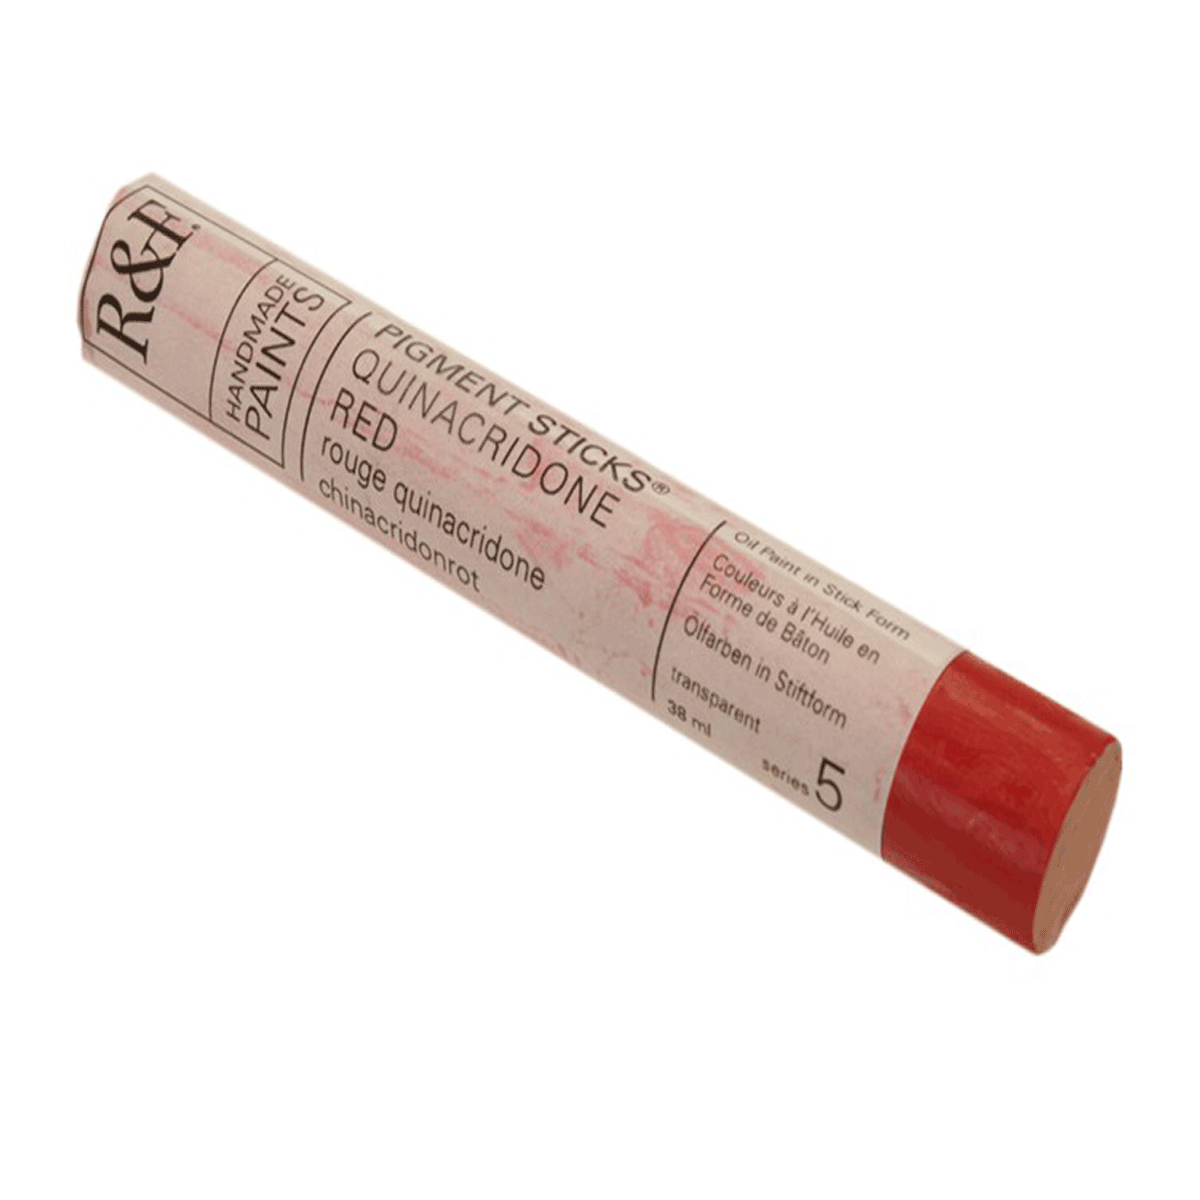 R&F Oil Pigment Stick, Quinacridone Red 38ml